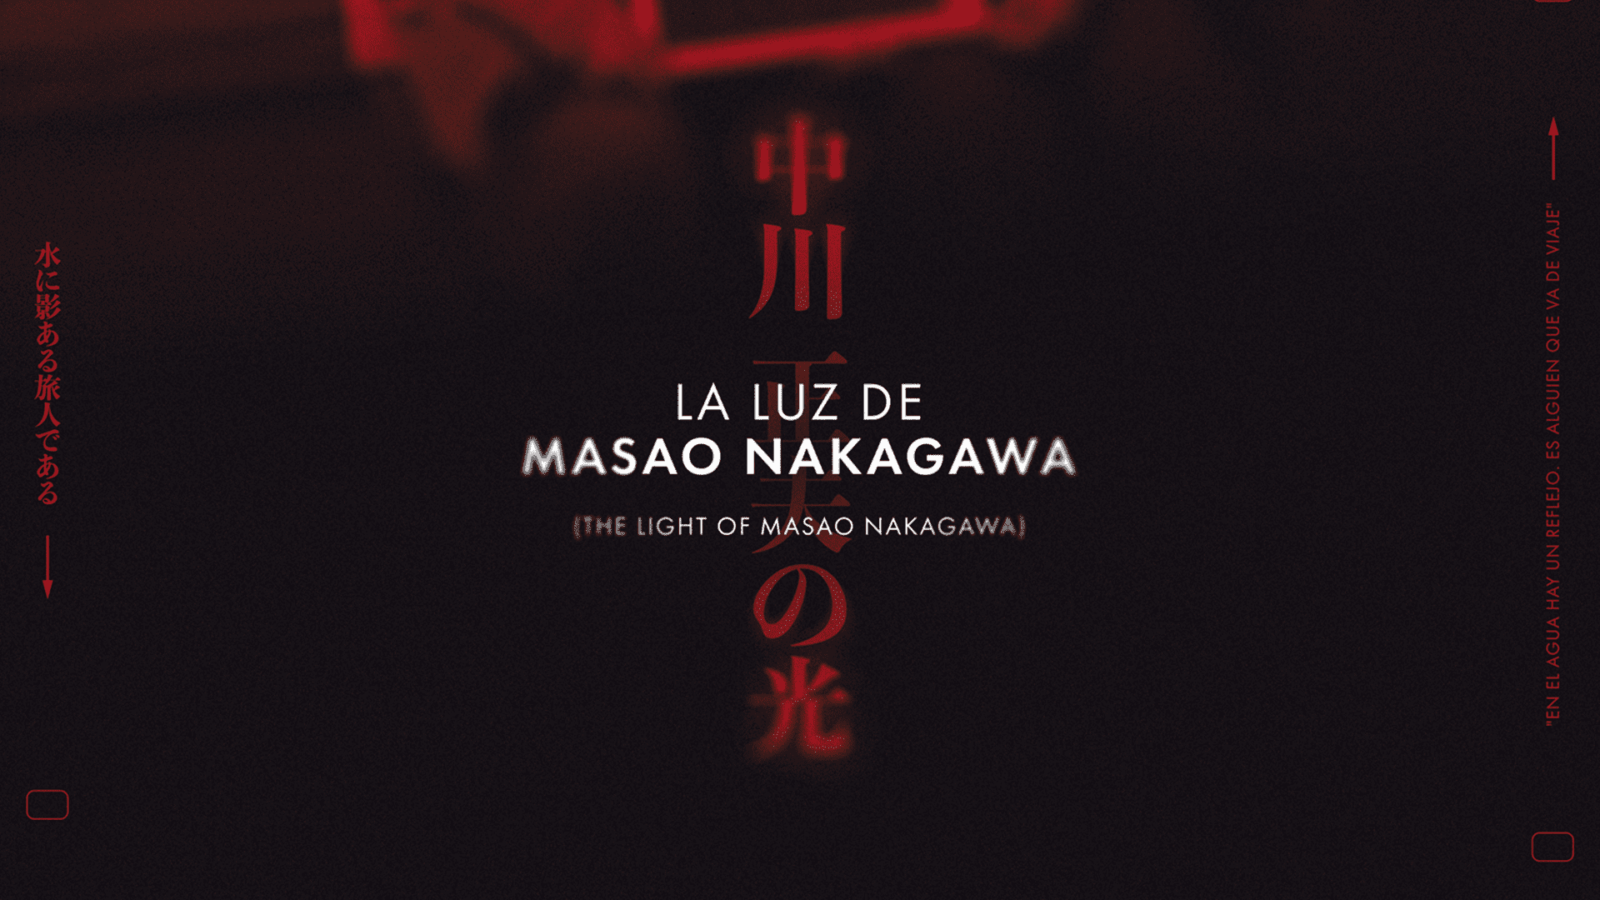 La Luz de Masao Nakagawa